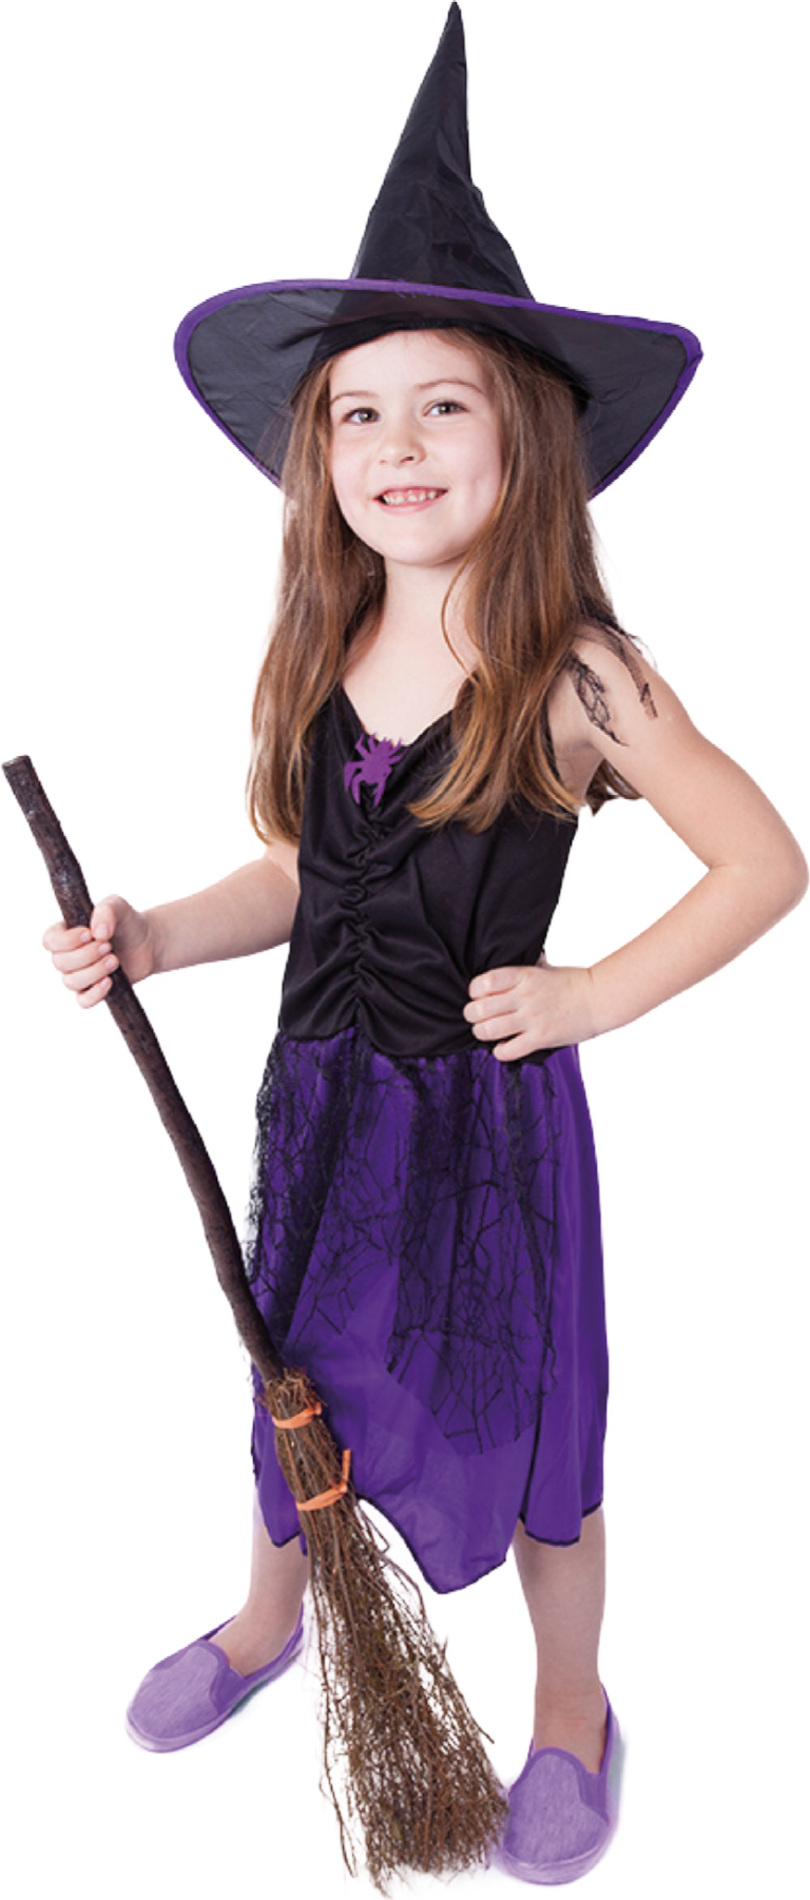 Dětský kostým čarodějnice fialová s kloboukem (S)